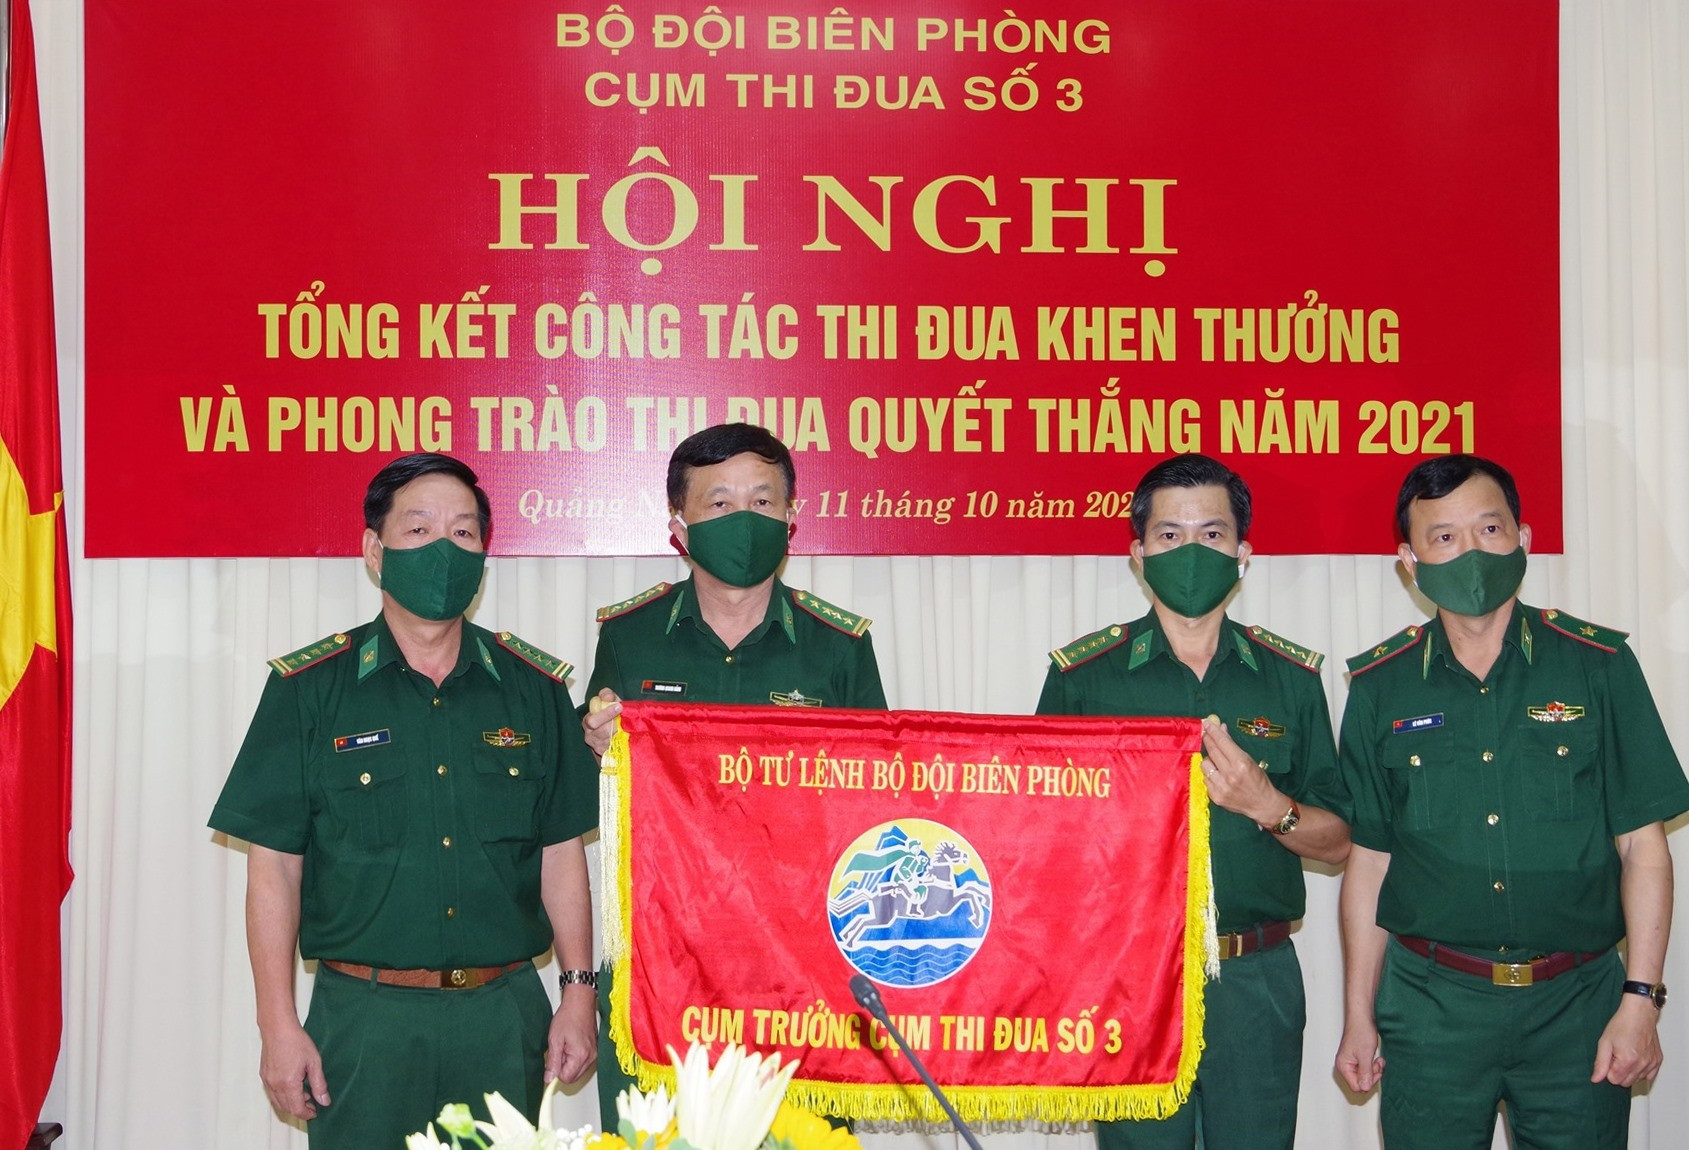 BĐBP Quảng Nam trao cờ Cụm trưởng Cụm thi đua số 3 cho BĐBP Quảng Ngãi. Ảnh: Hồng Anh